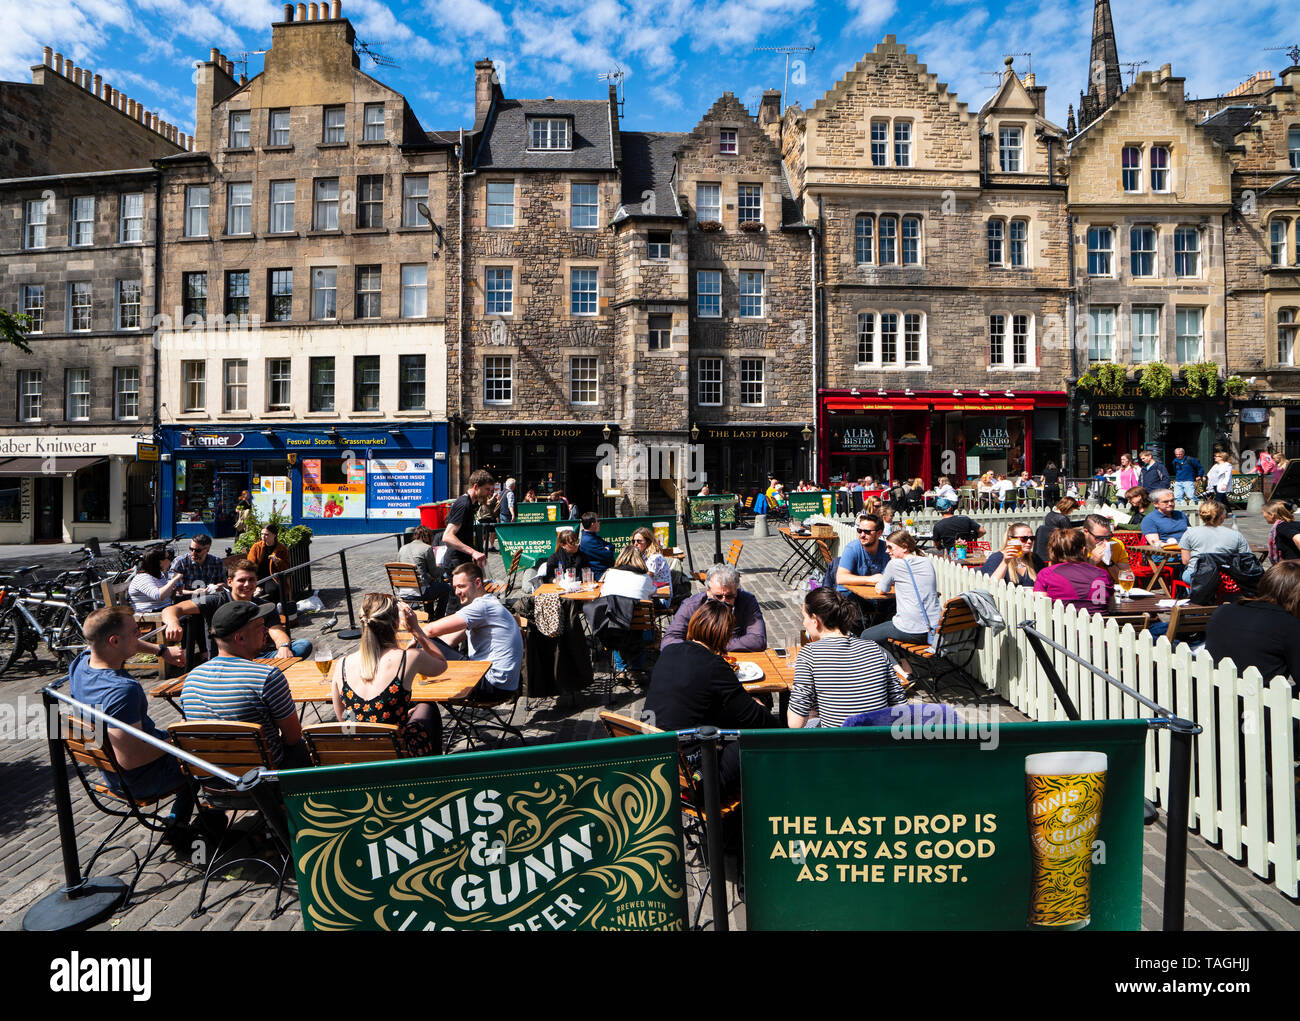 Beaucoup de gens de boire dans les bars en plein air par temps chaud à Grassmarket dans la vieille ville d'Édimbourg, Écosse, Royaume-Uni Banque D'Images